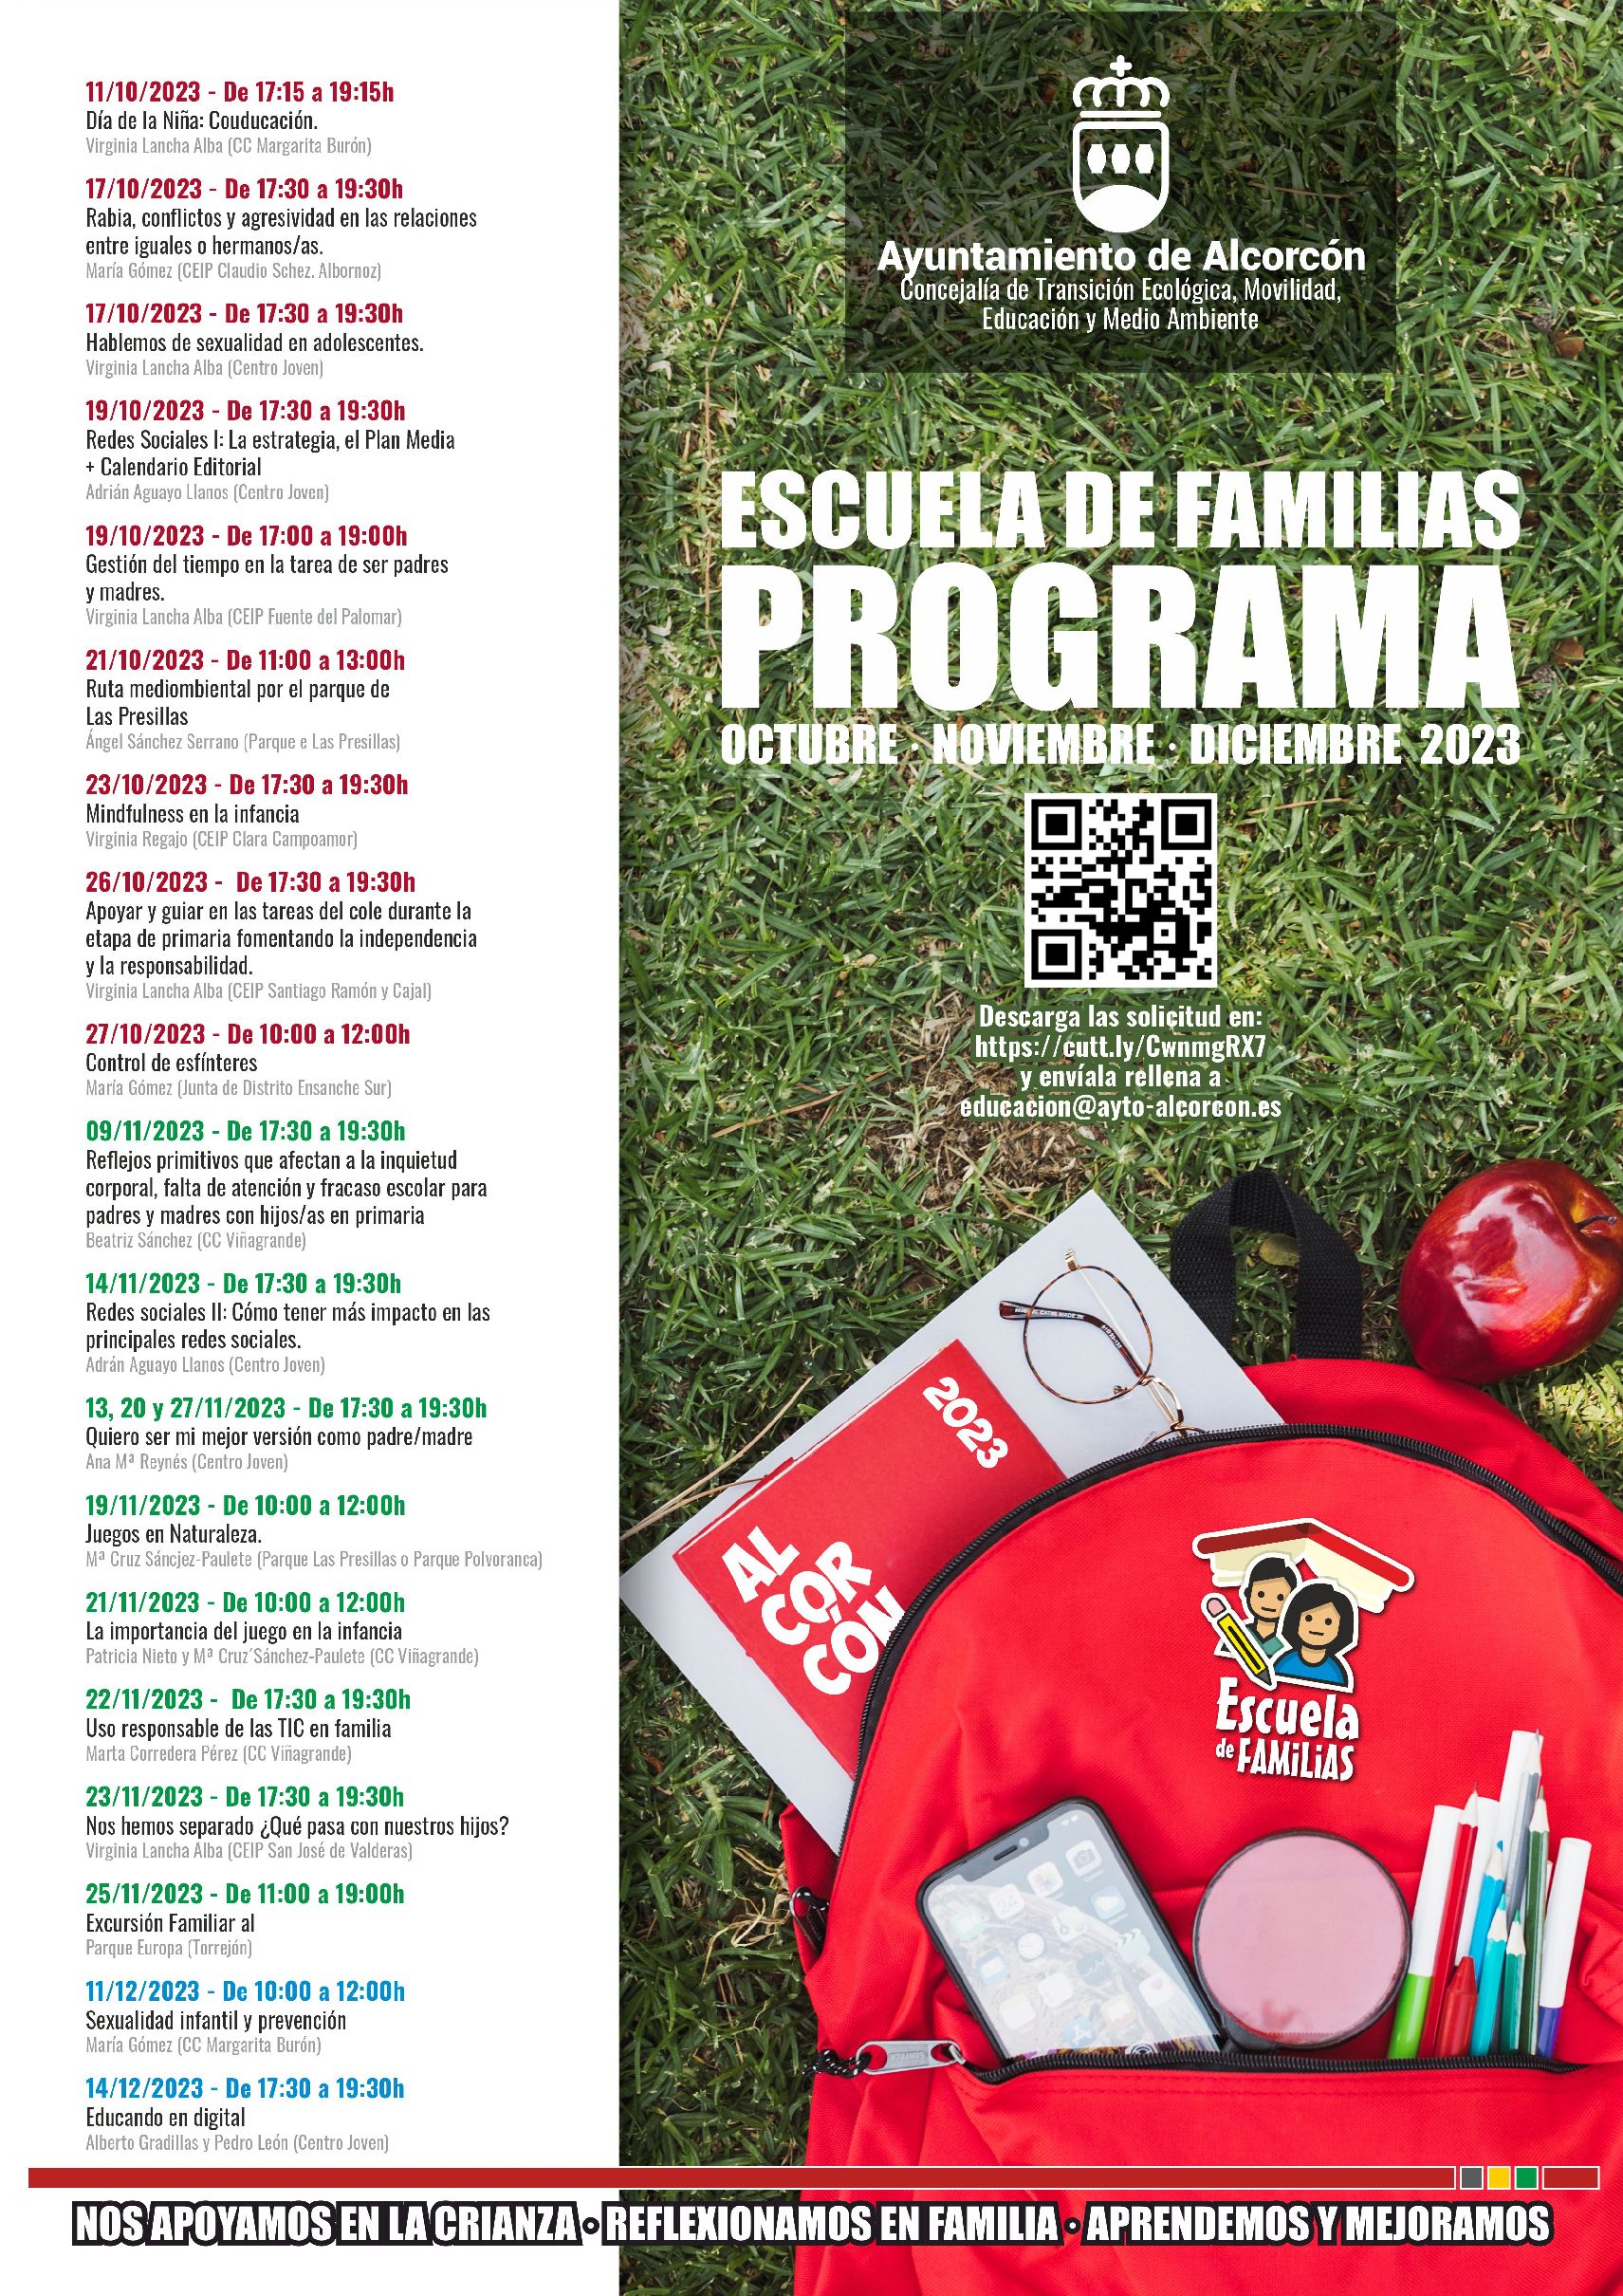 La Escuela de Familias de Alcorcón organiza talleres, cursos y salidas hasta diciembre